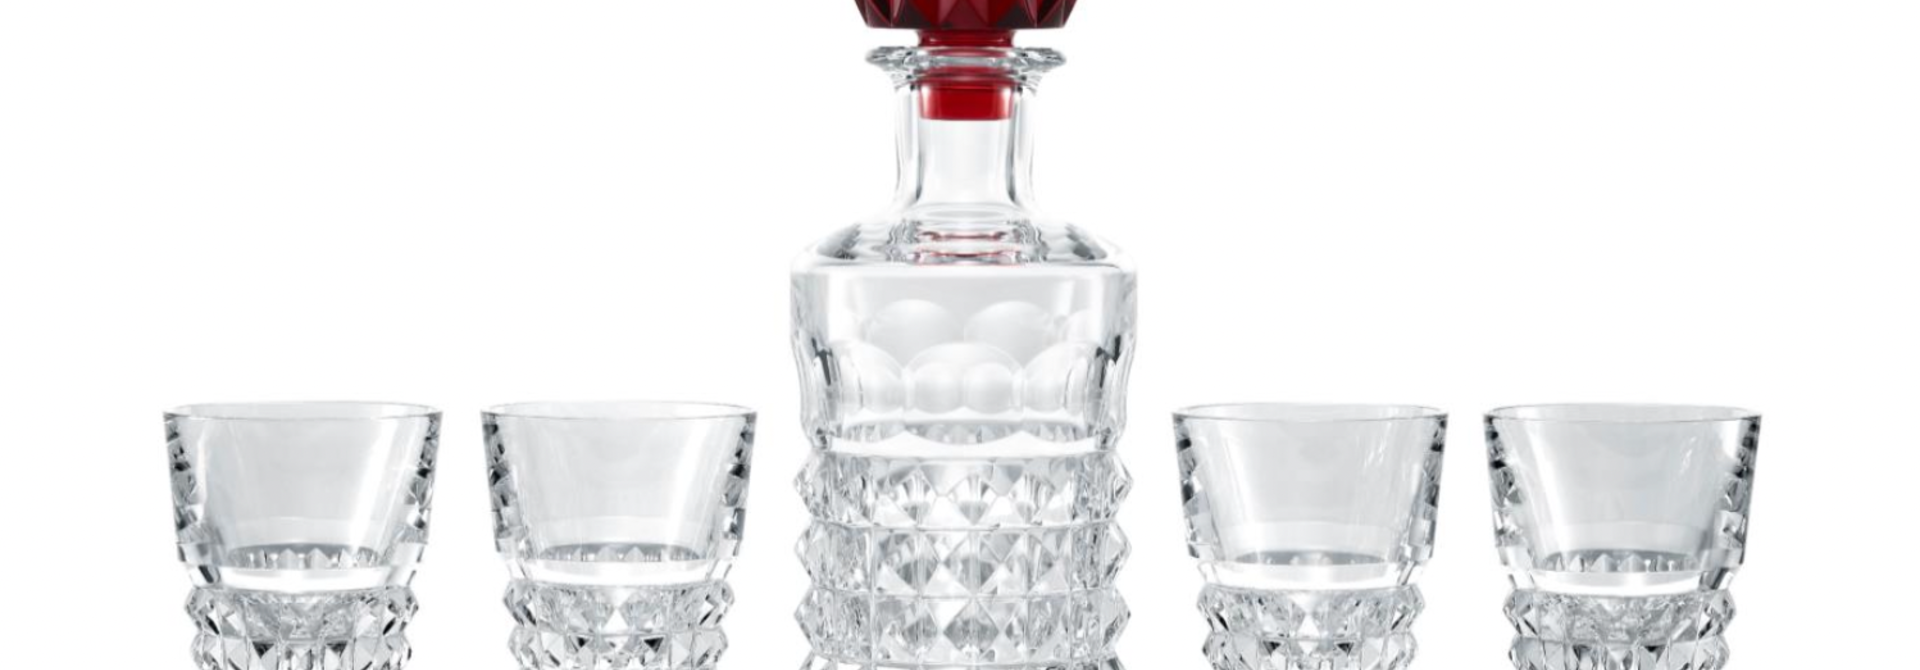 Giftset Red Bar Louxor Decanter & 4 Glasses